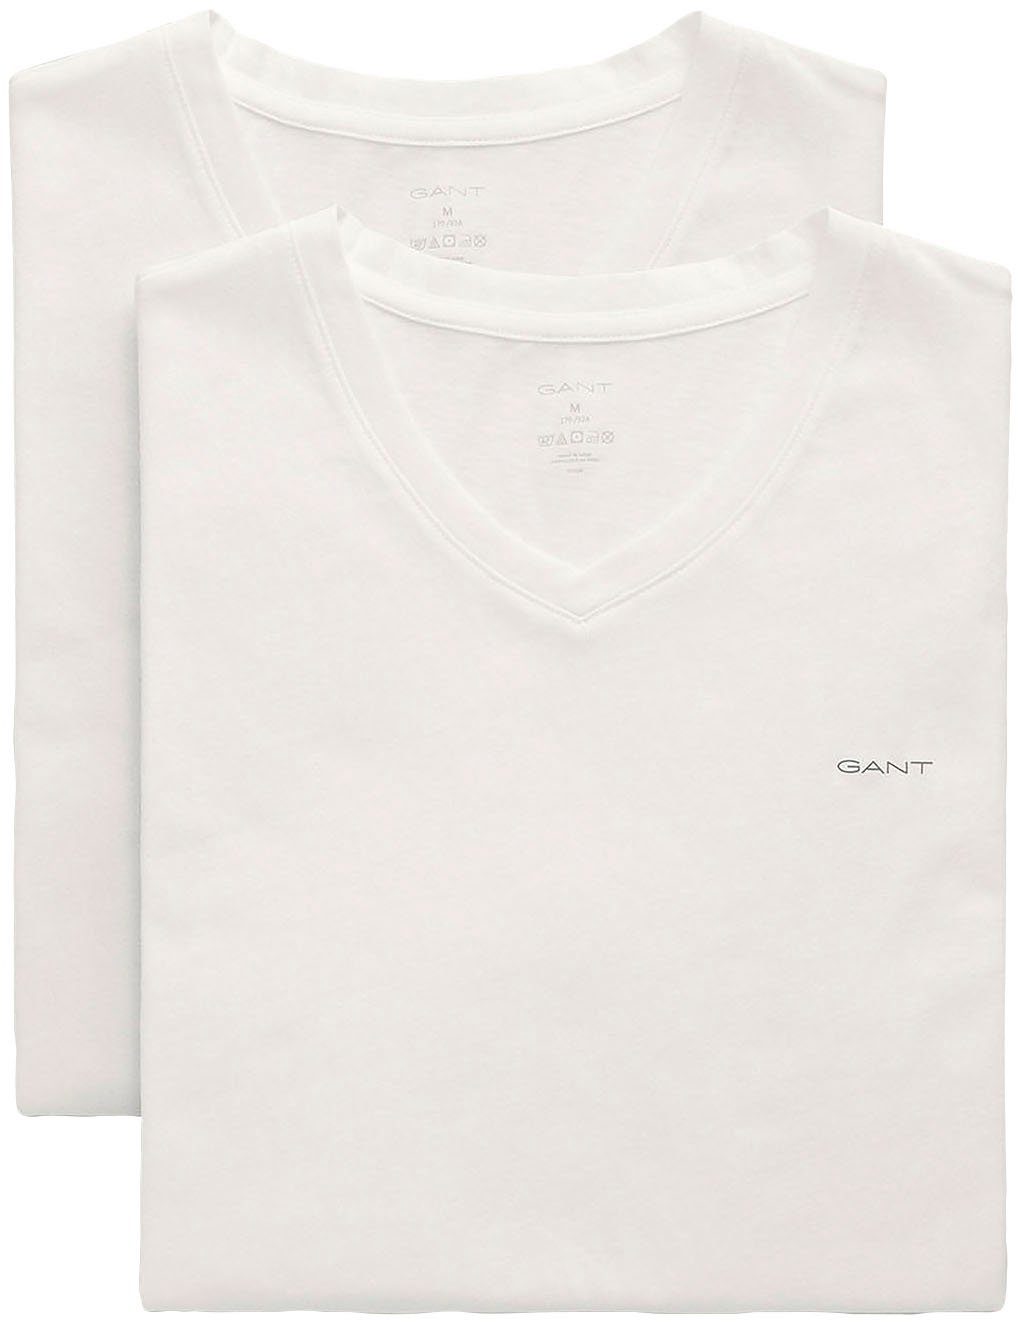 der 2er) white auf 2-PACK Unterziehshirt Brust 2-St., Gant T-SHIRT Markenlabel V-NECK (Packung, mit